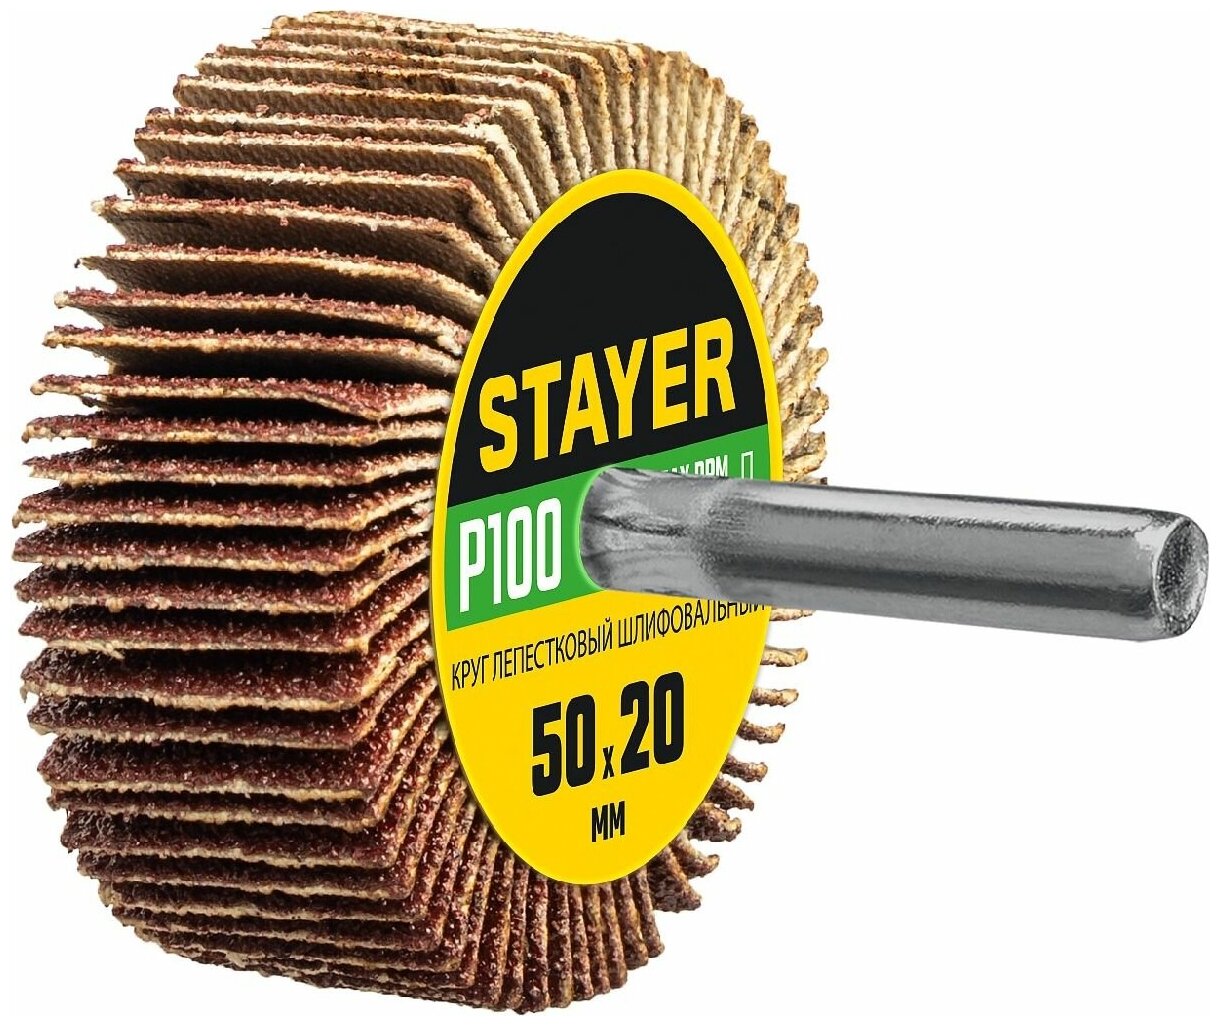 STAYER d 50x20 мм, P100, круг шлифовальный лепестковый, на шпильке, (36607-100)